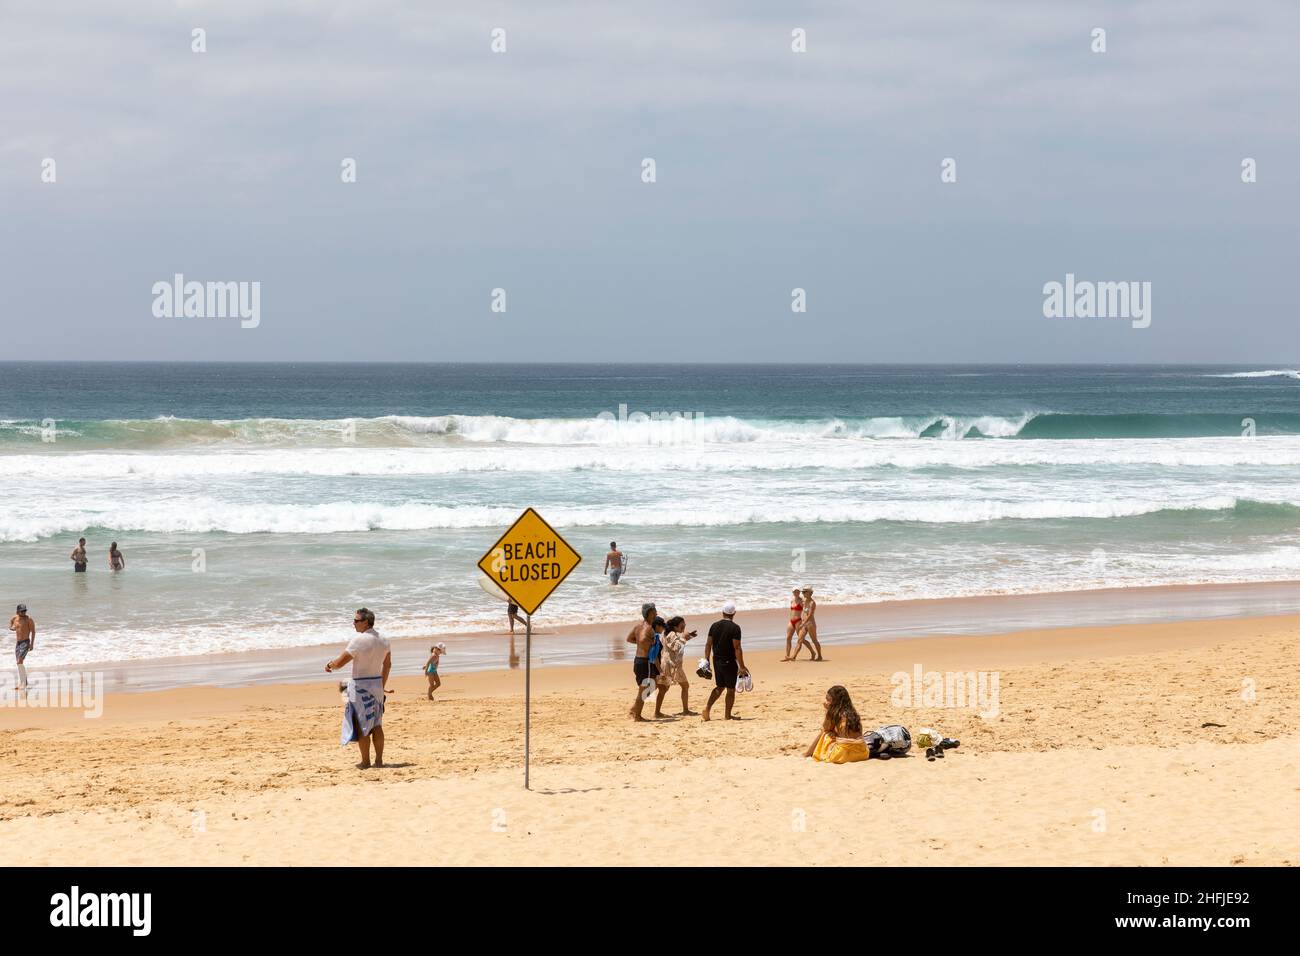 Manly Beach Sydney, avertissement tsunami suite à l'éruption du volcan Tonga conduit à la plage fermée, ignoré par certains, Sydney, Australie Banque D'Images